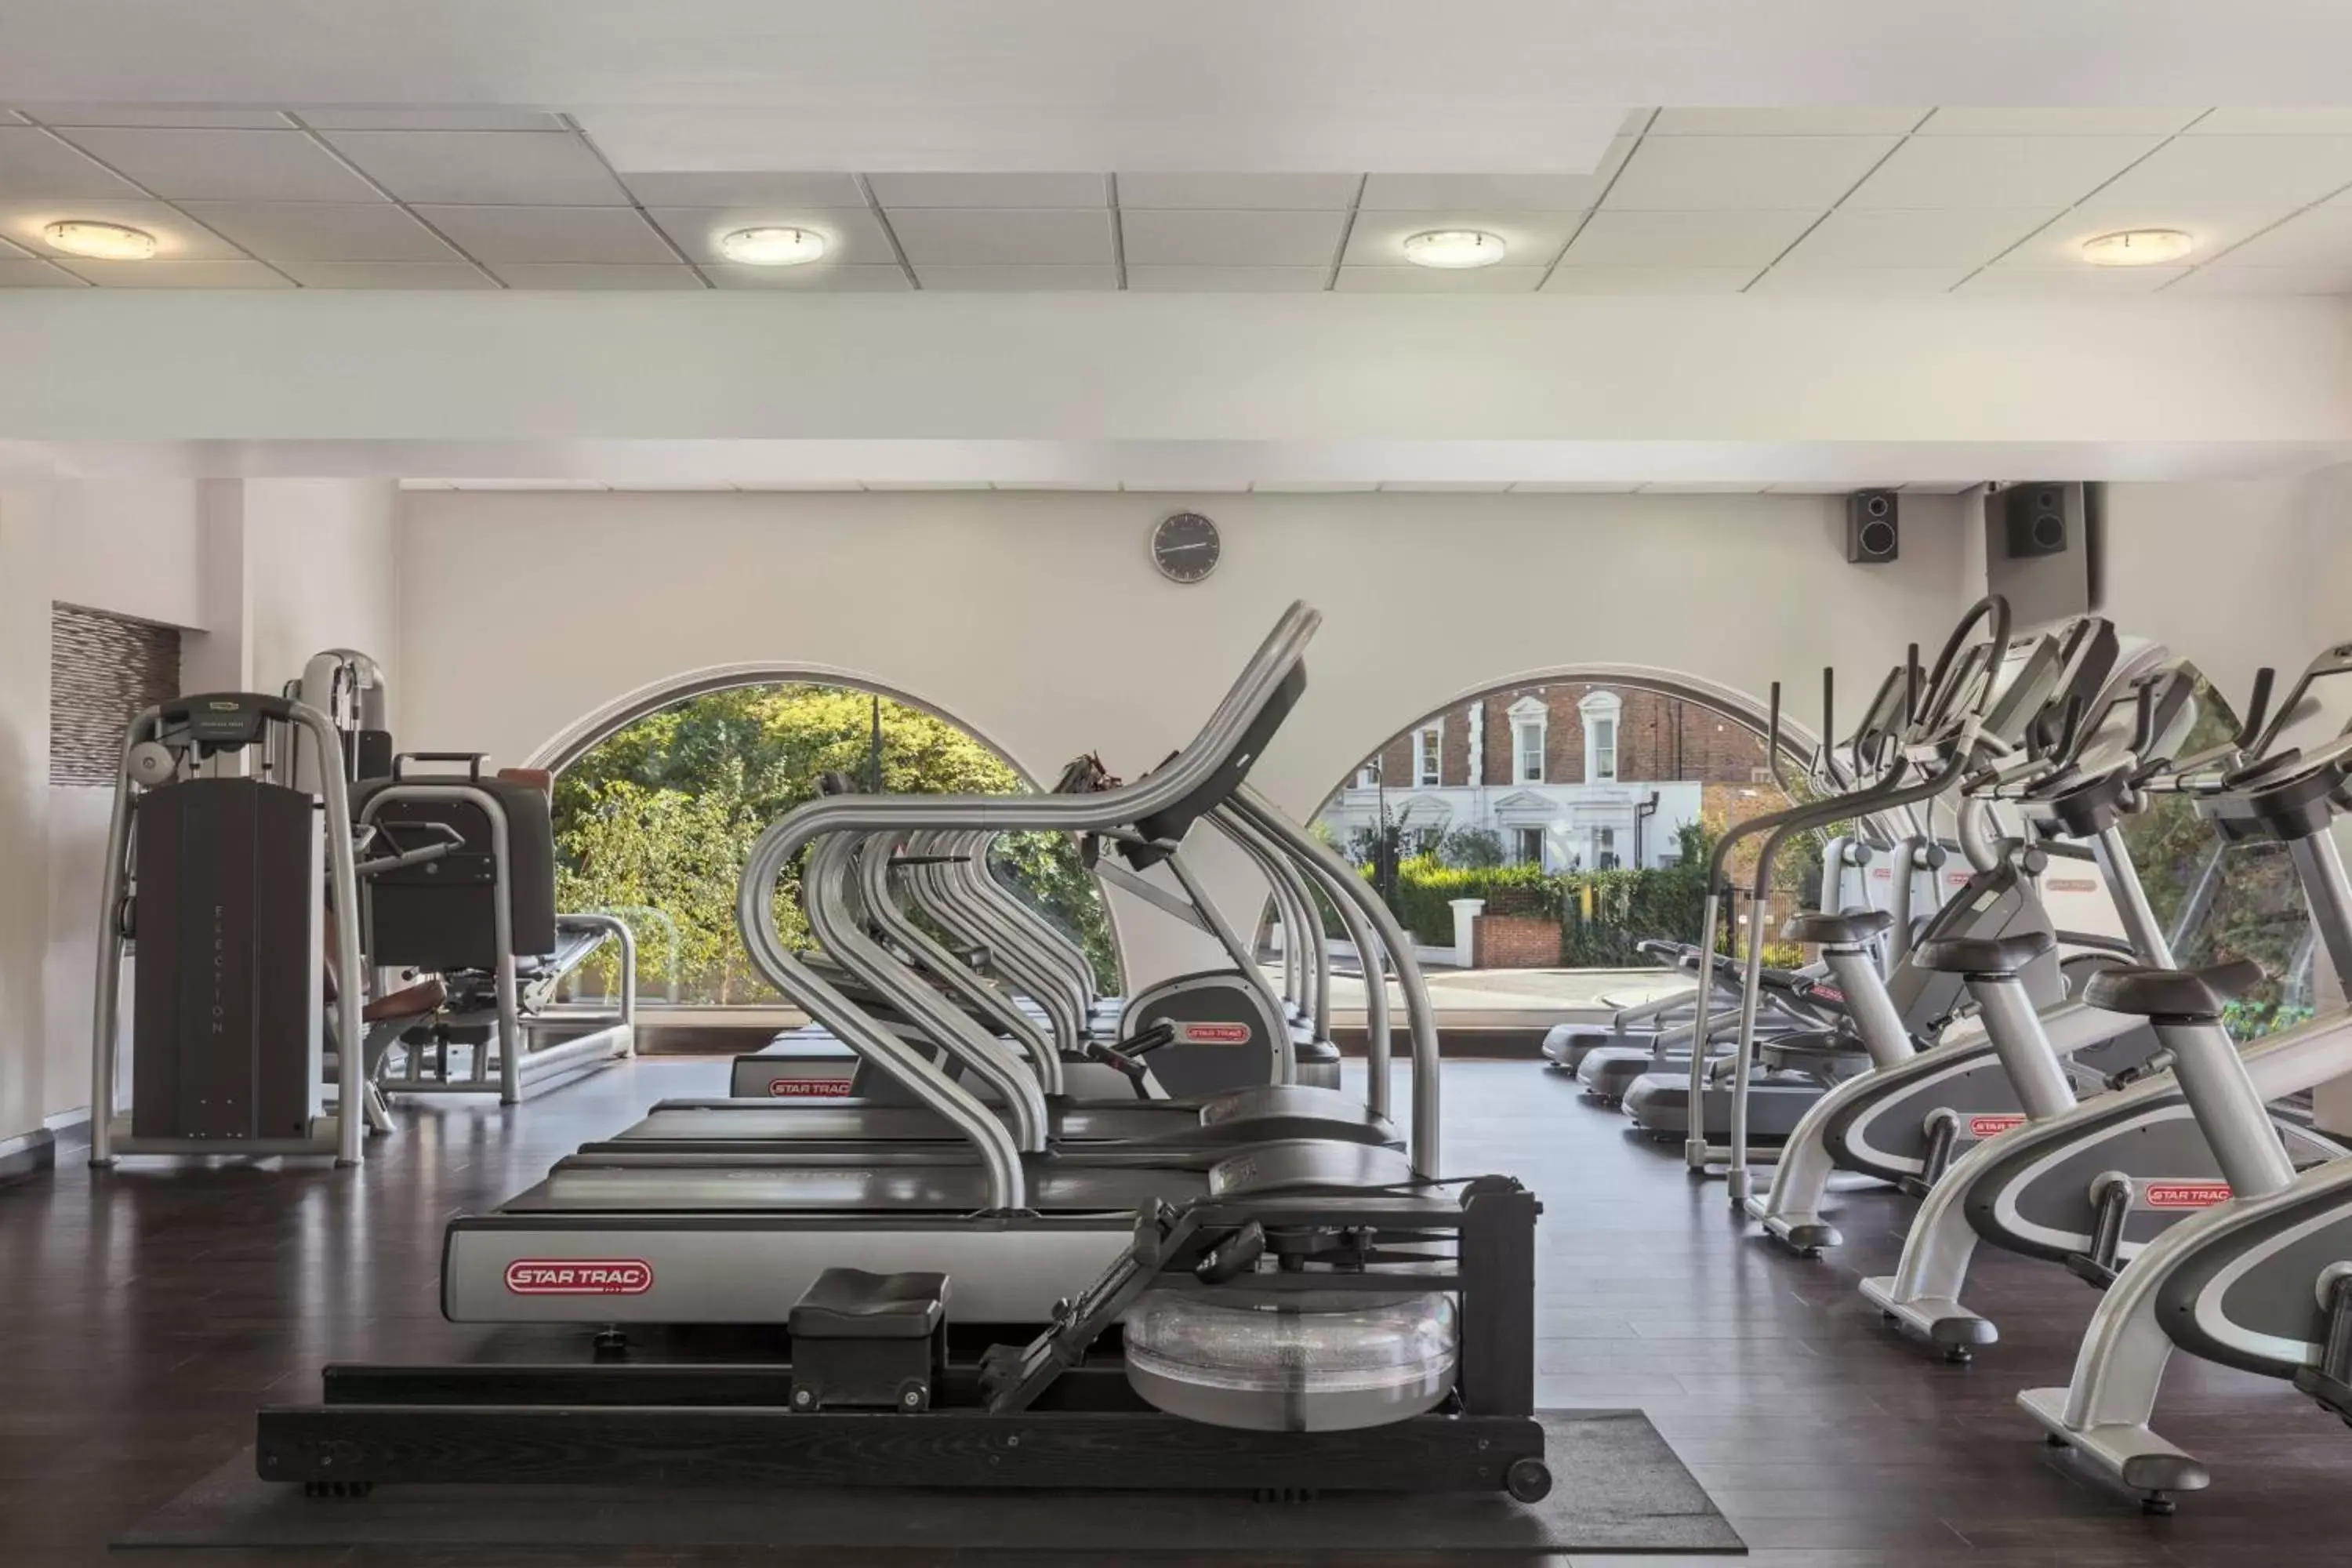 Fitness centre/facilities, Fitness Center/Facilities in London Marriott Hotel Regents Park